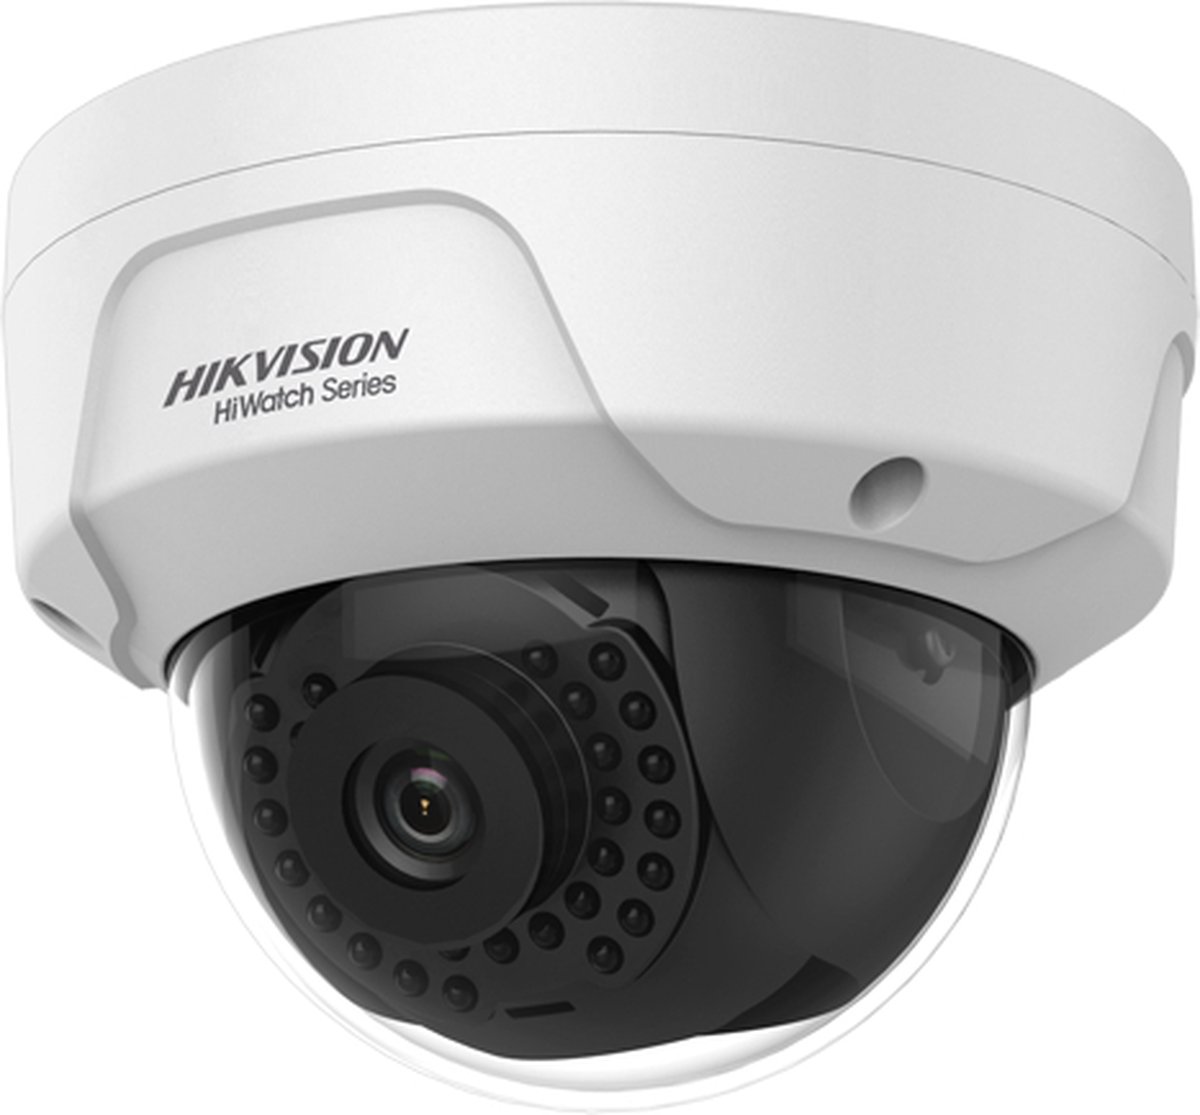 Hikvision HWI-D180H HiWatch 4k 8MP buiten dome met IR nachtzicht, WDR en PoE - Beveiligingscamera IP camera bewakingscamera camerabewaking veiligheidscamera beveiliging netwerk camera webcam